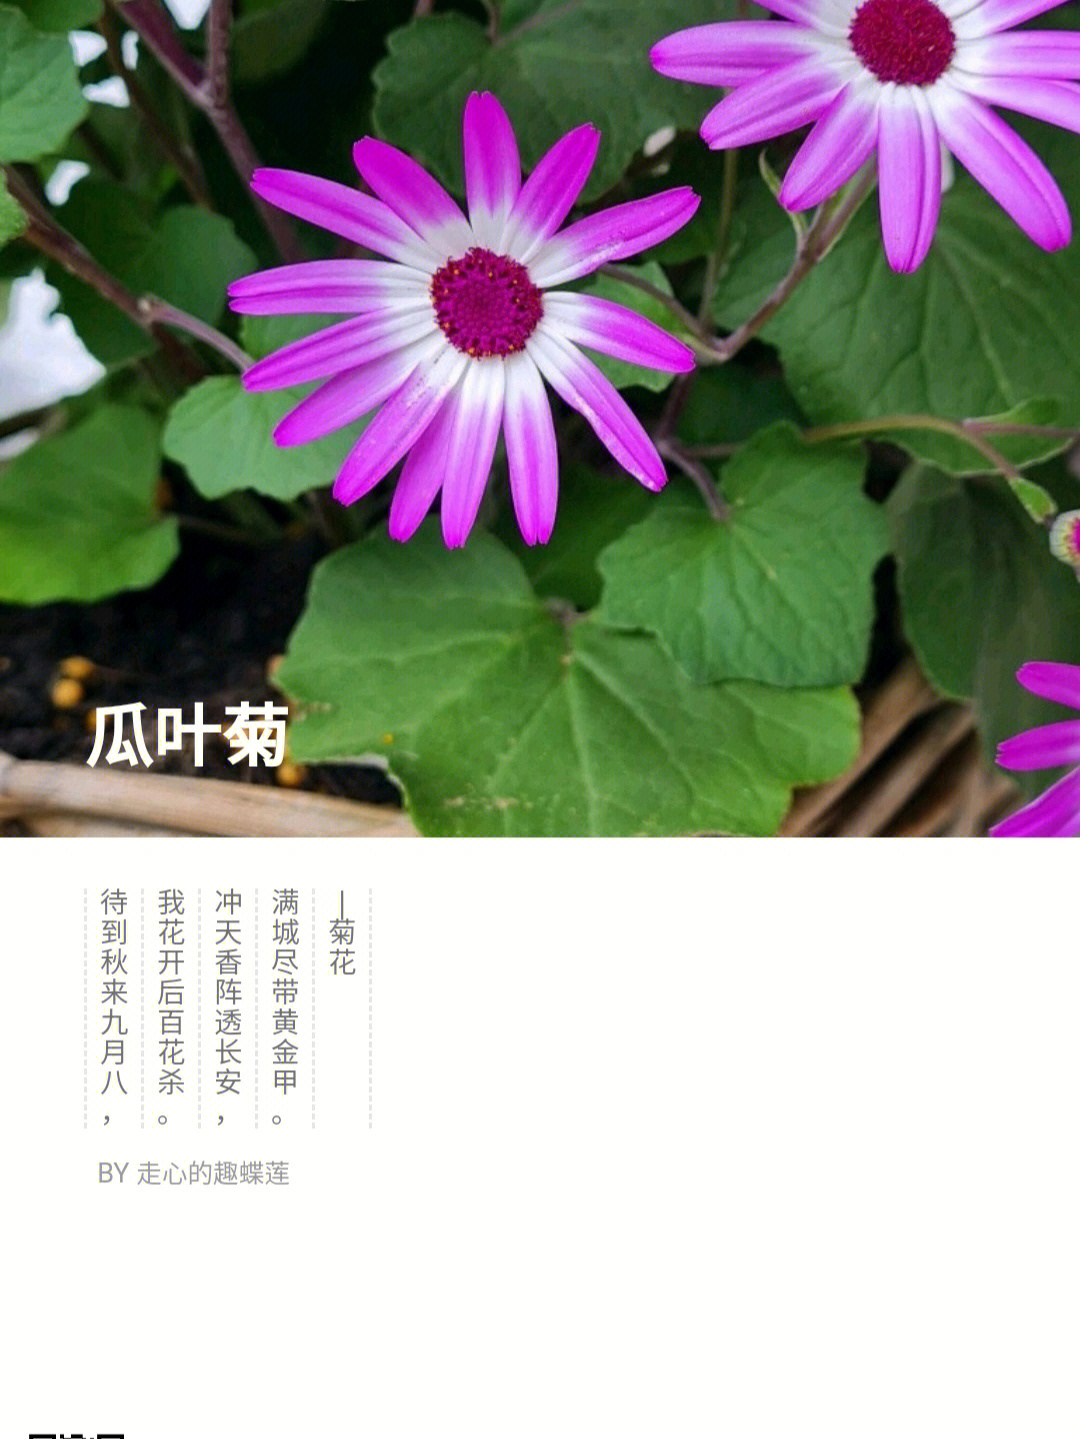 瓜叶菊的花语图片